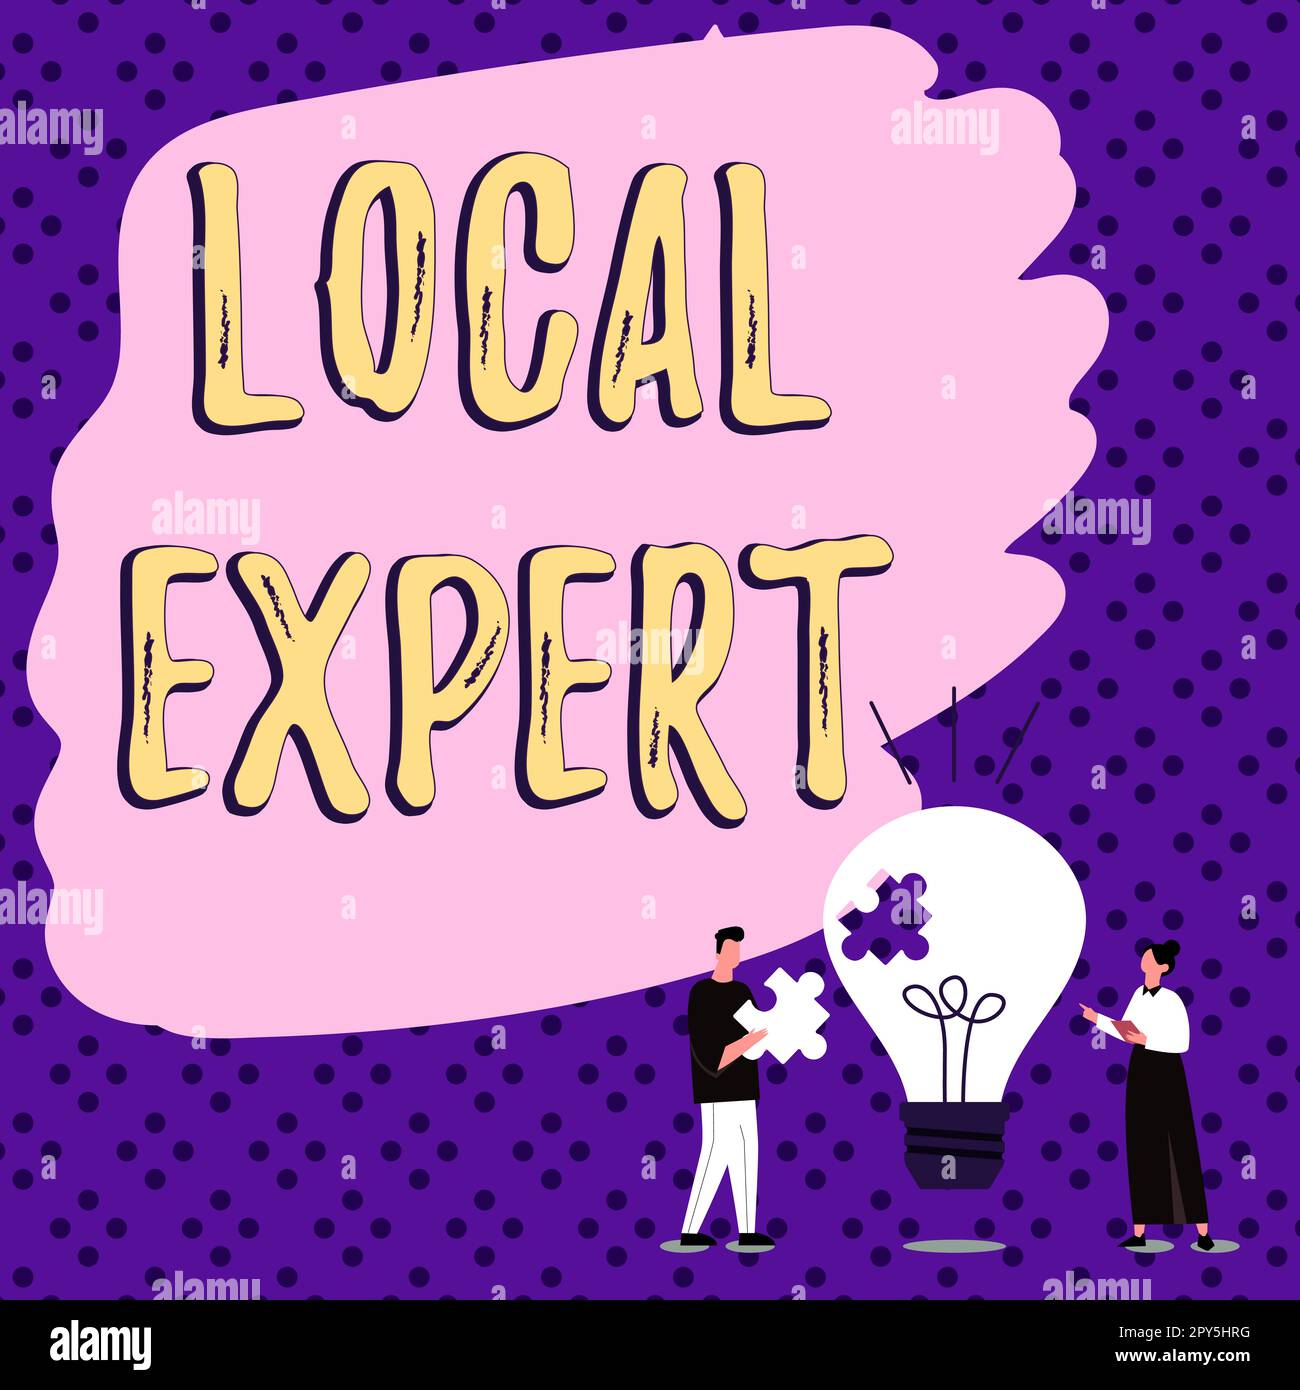 Affiche local Expert. Business concept offre une expertise et une assistance pour la réservation d'événements sur place Banque D'Images